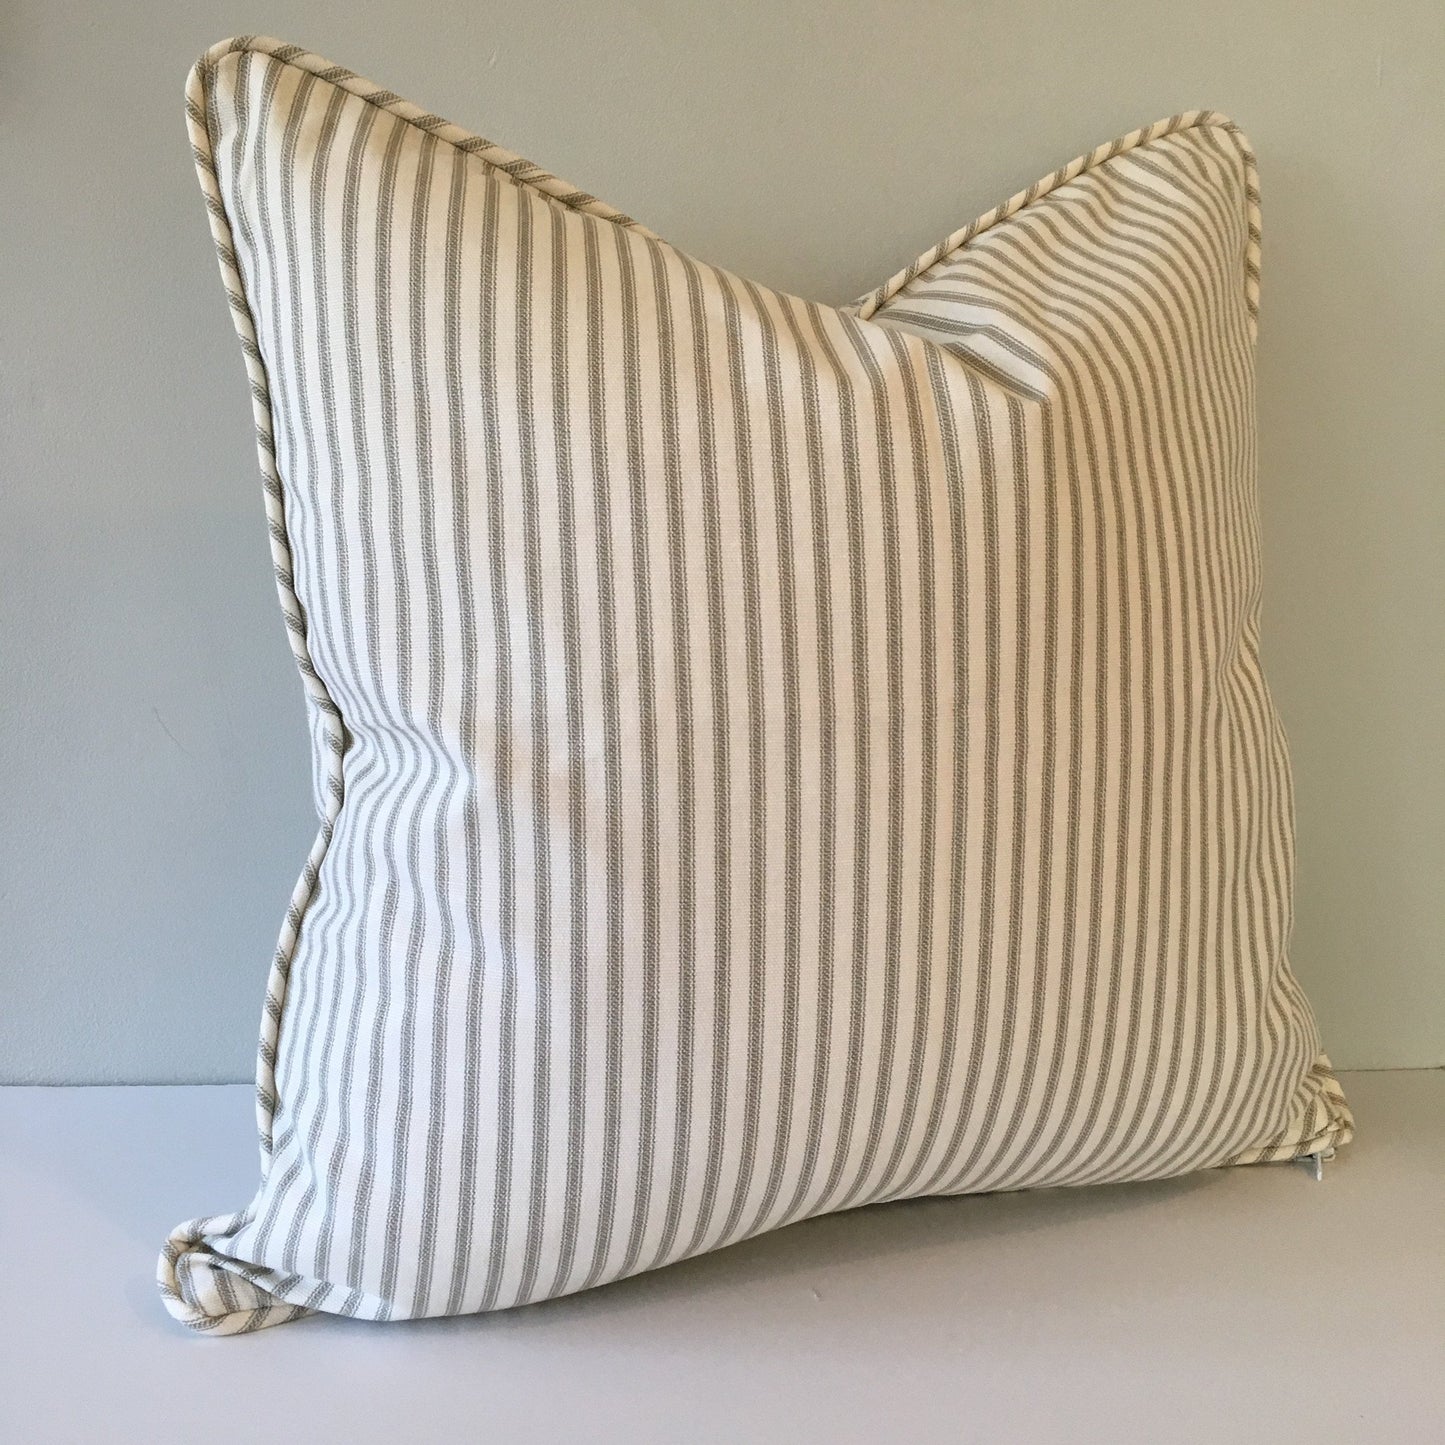 Gray Ticking Stripe Throw Pillow Cover 18x18